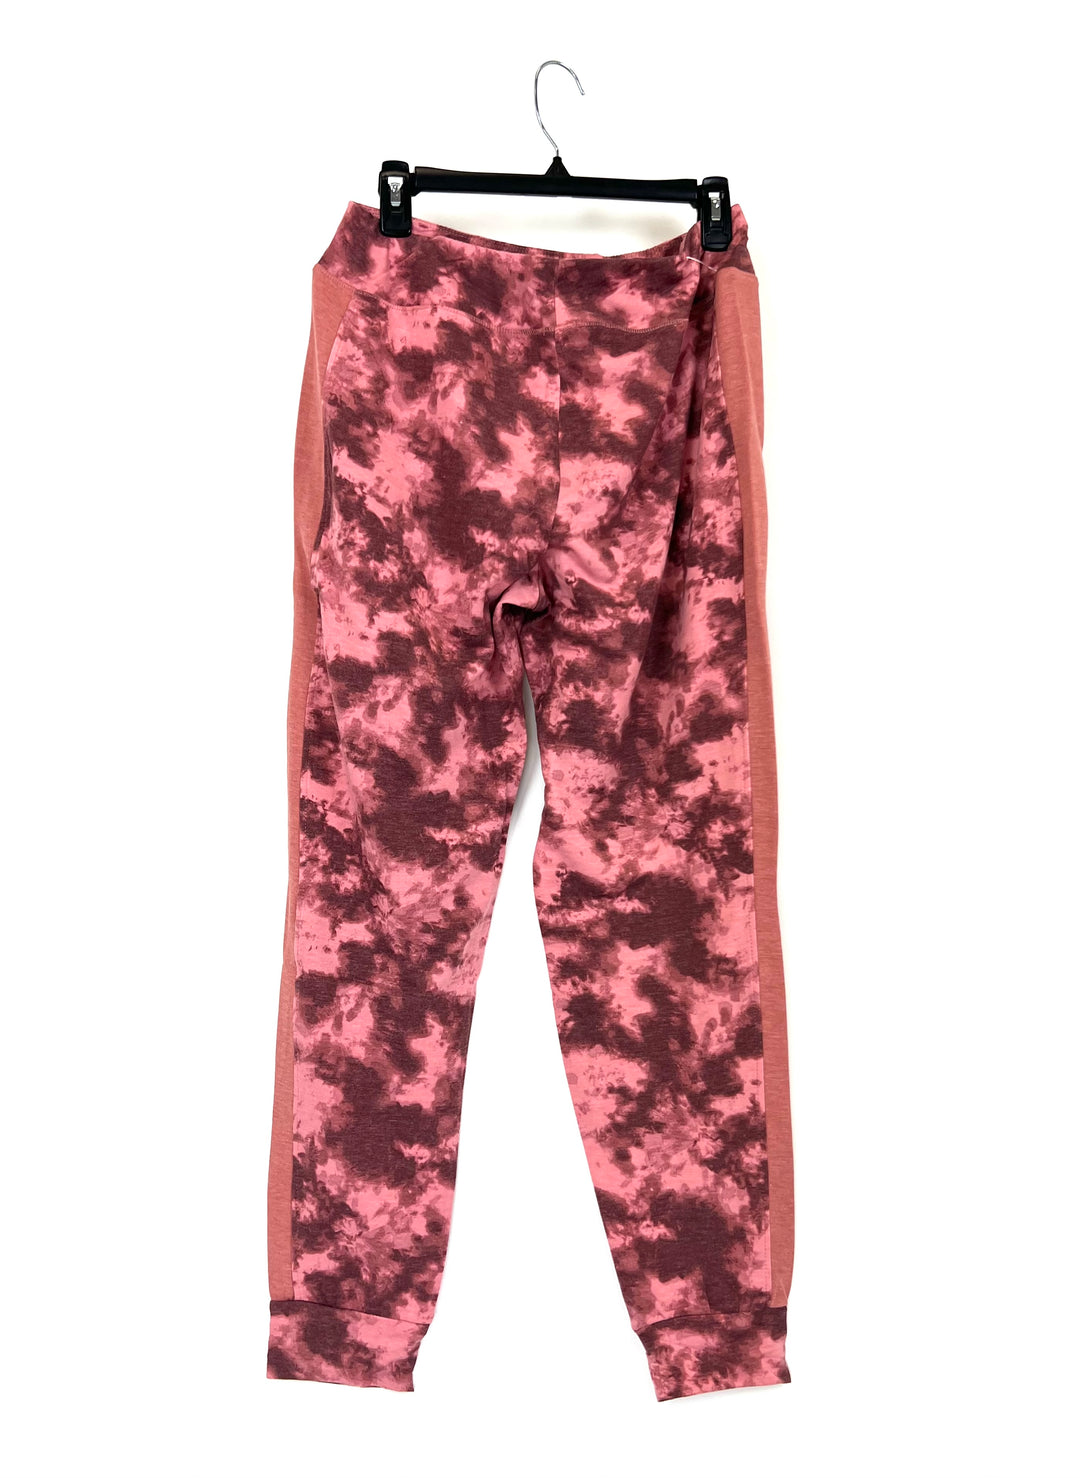 Pink Tie Dye Sweatpants - Size 6-8